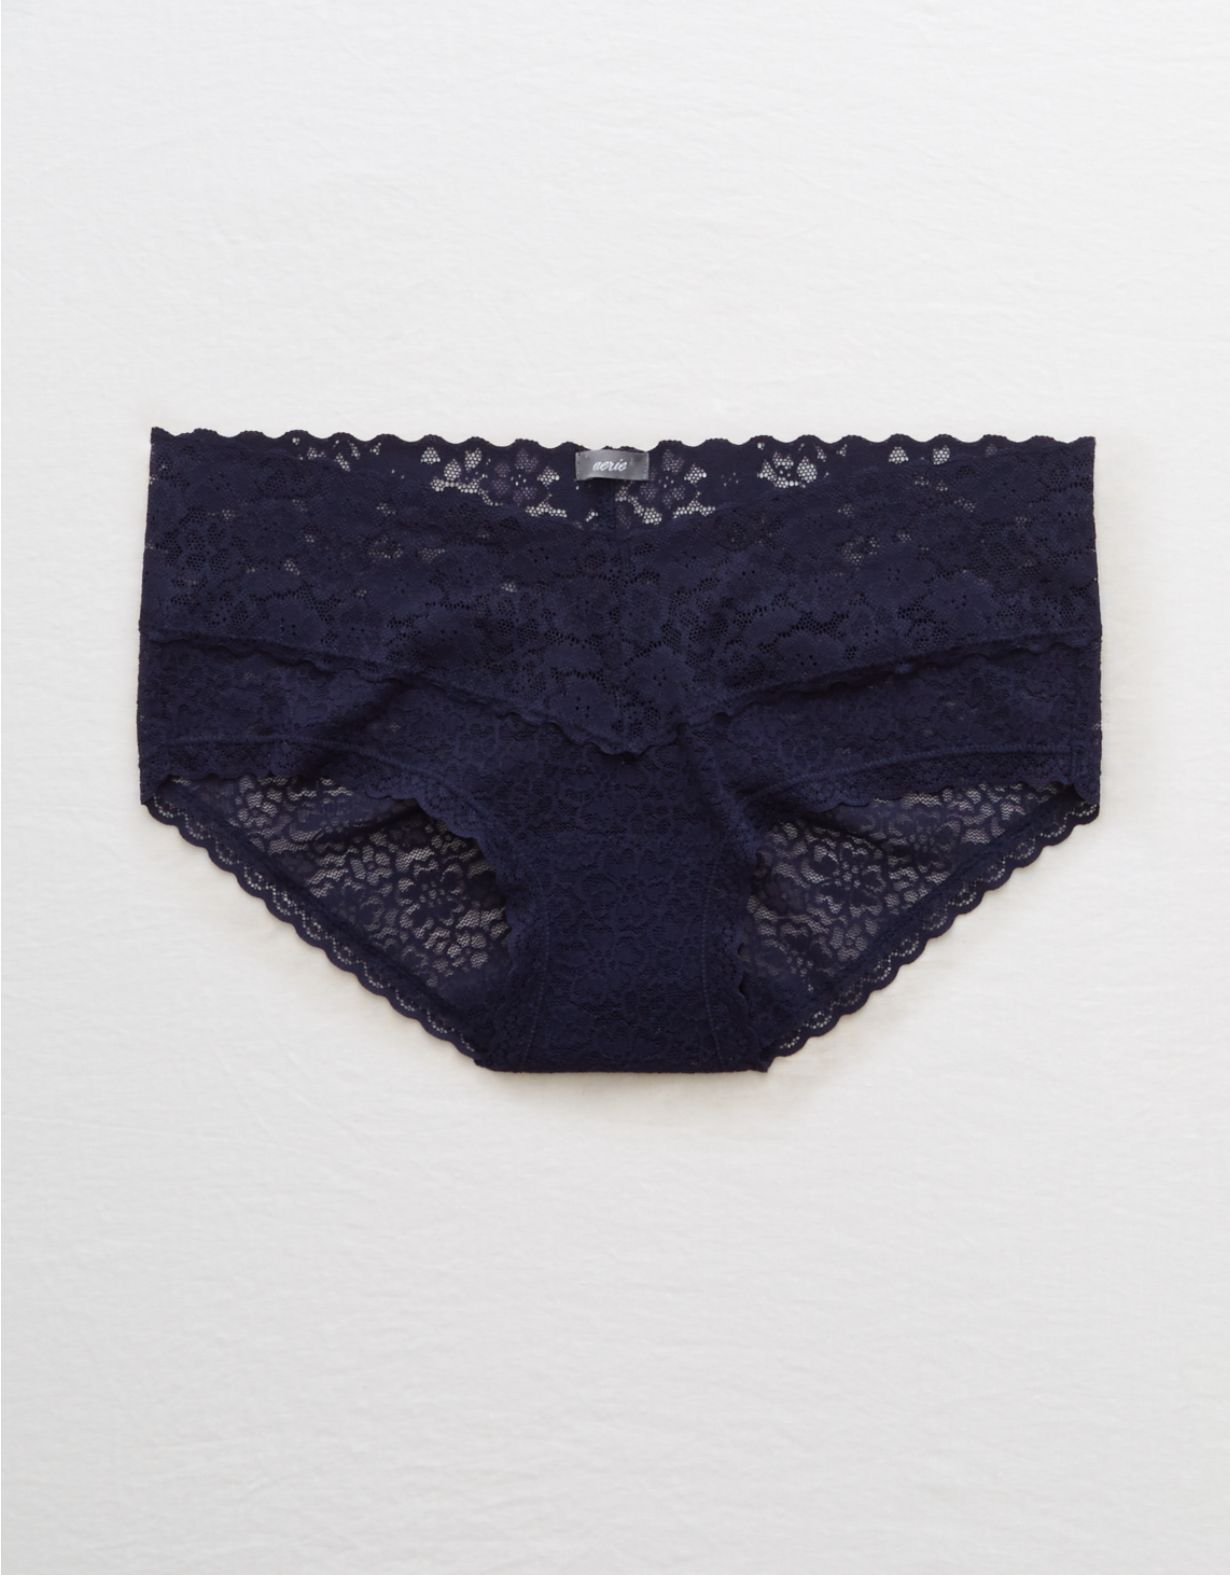 Aerie Lace Boybrief Underwear